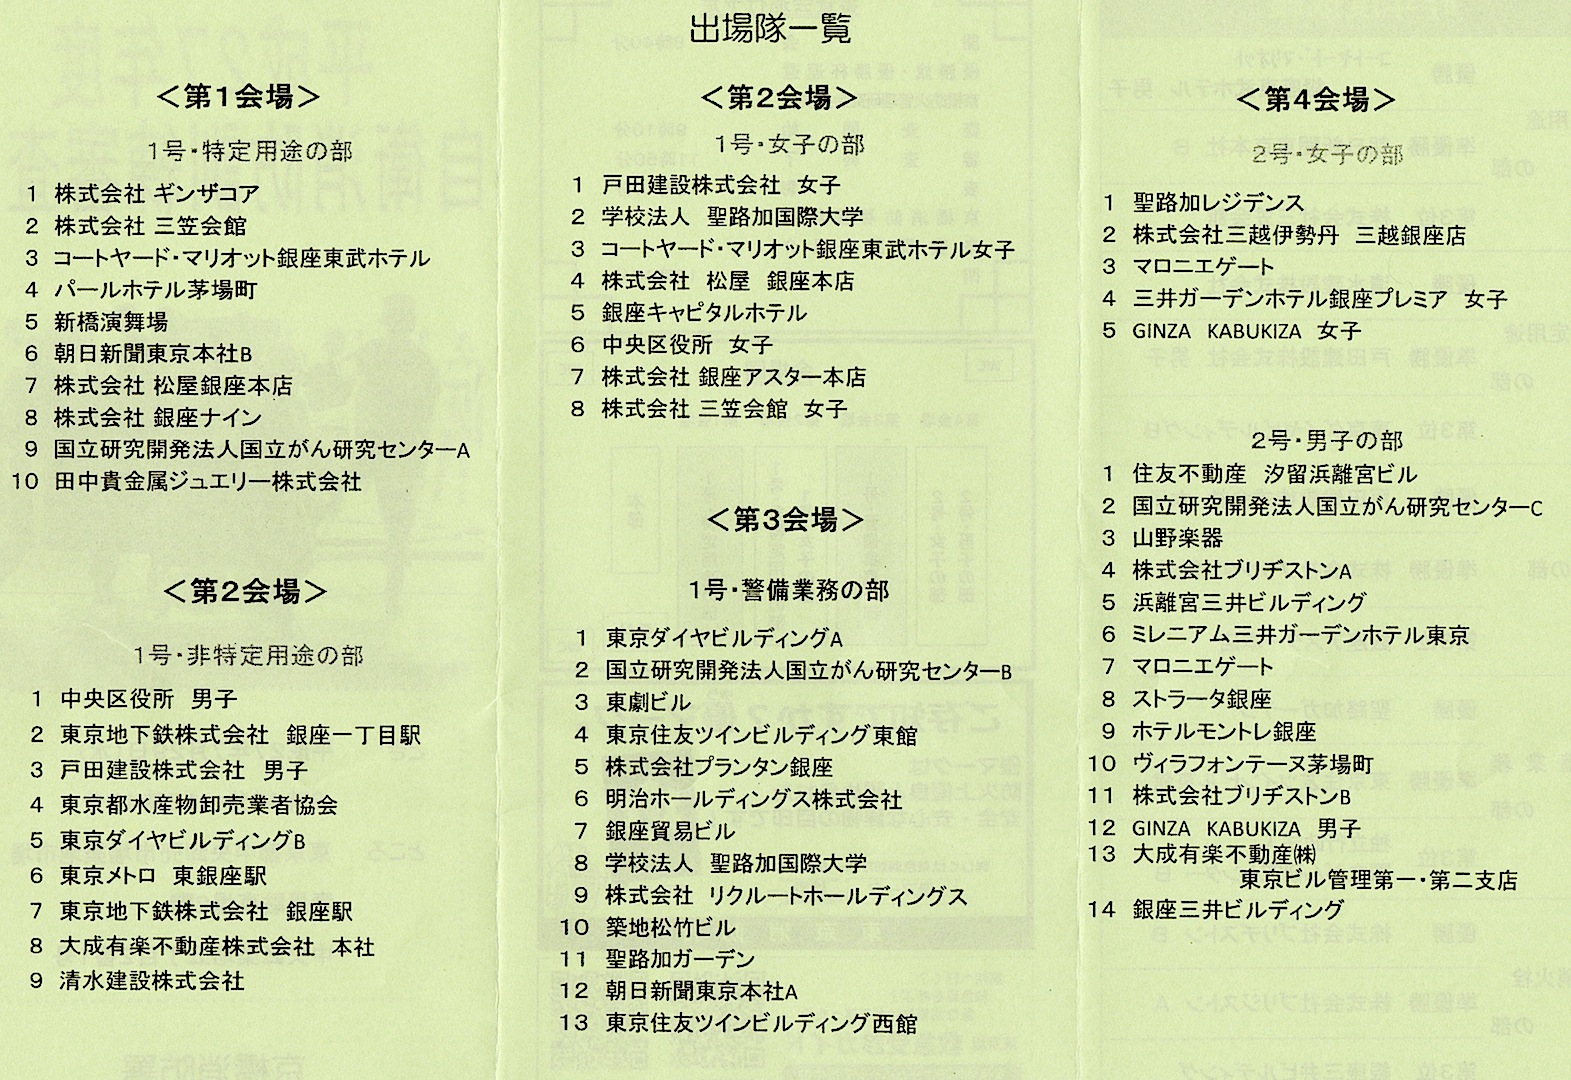 １０京橋自衛消防訓練審査会参加事業所リスト